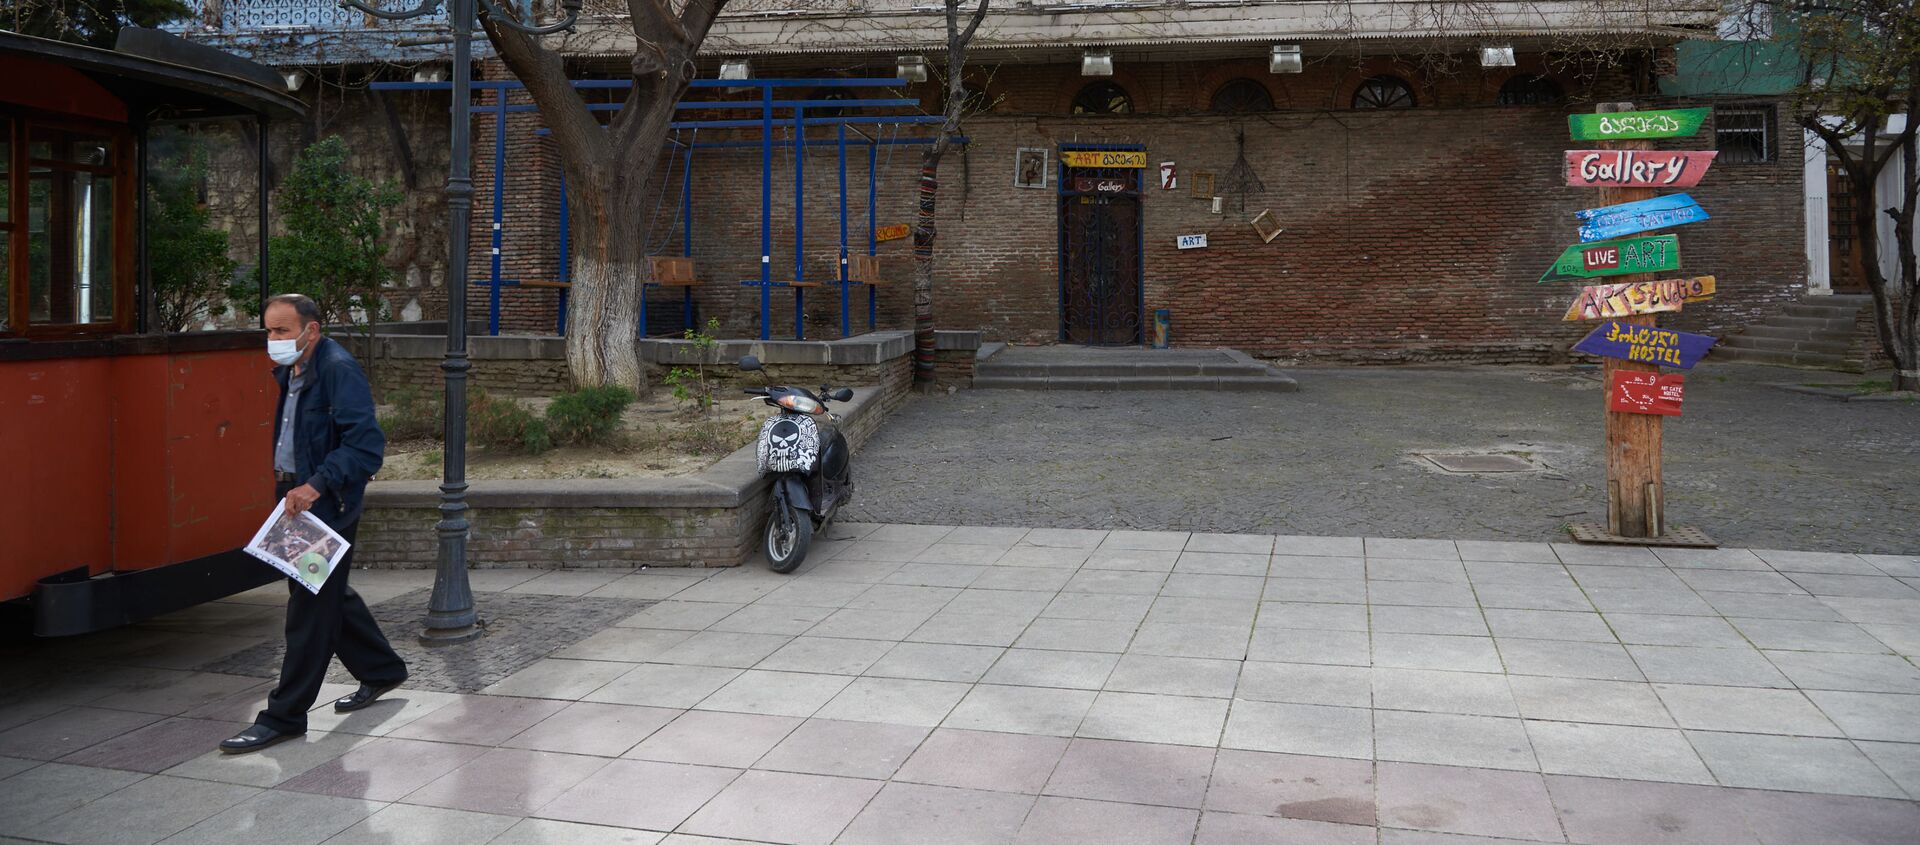 Весна в Тбилиси - деревья в цвету в старом городе. Закрытые кафе и рестораны из-за пандемии коронавируса - Sputnik Грузия, 1920, 15.04.2021